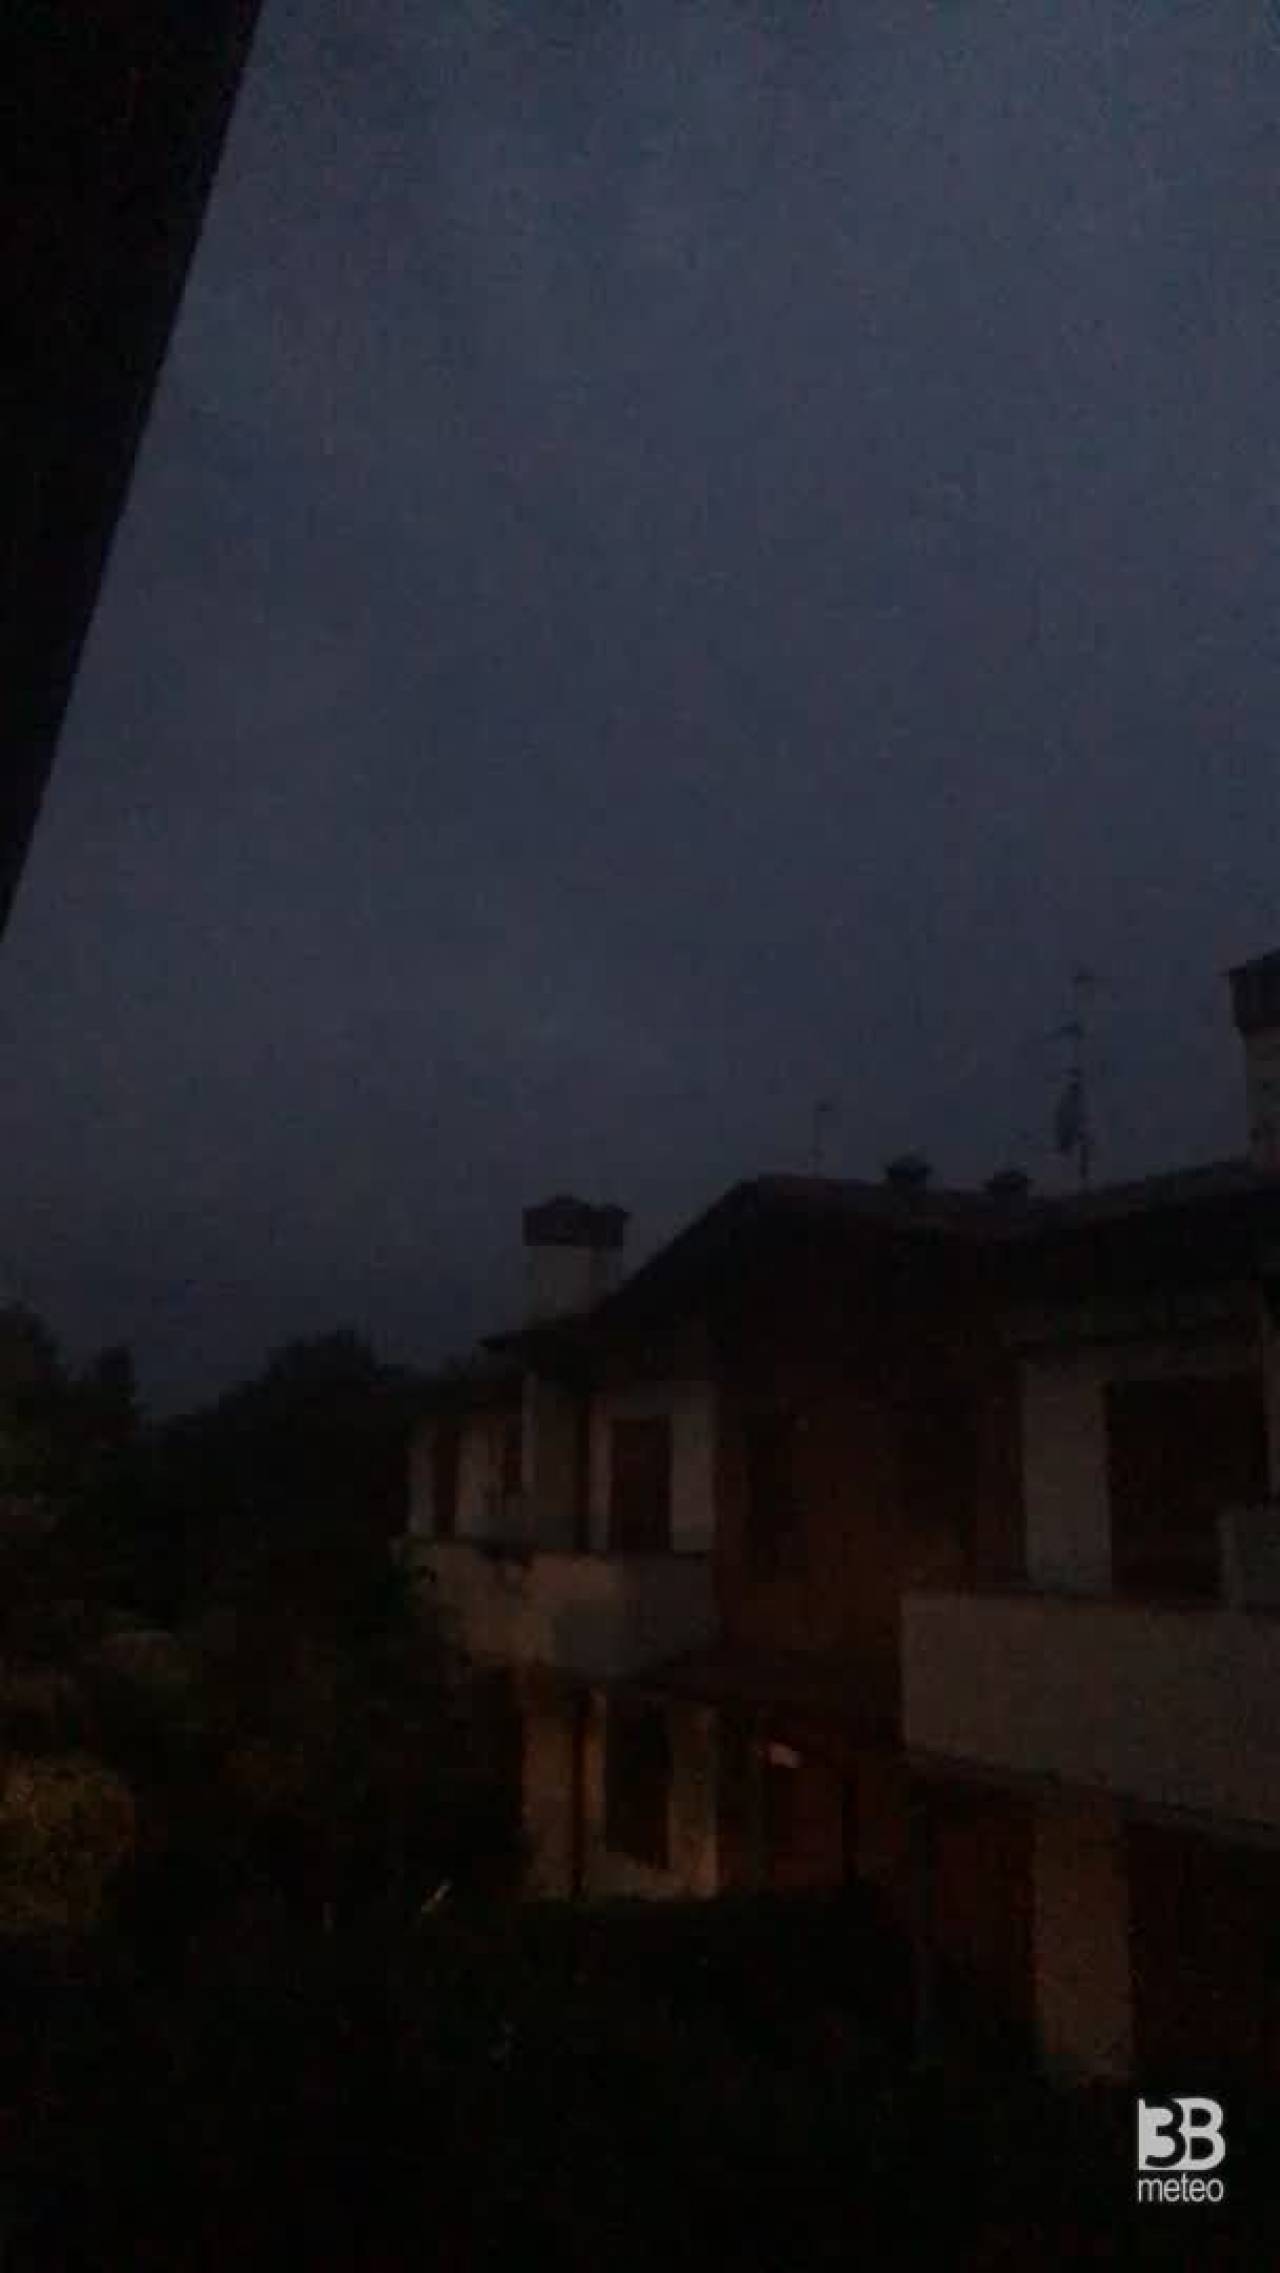 CRONACA METEO - Tuoni e fulmini giovedÃ¬ sera in Lombardia, la situazione dalla Provincia di Bergamo - VIDEO